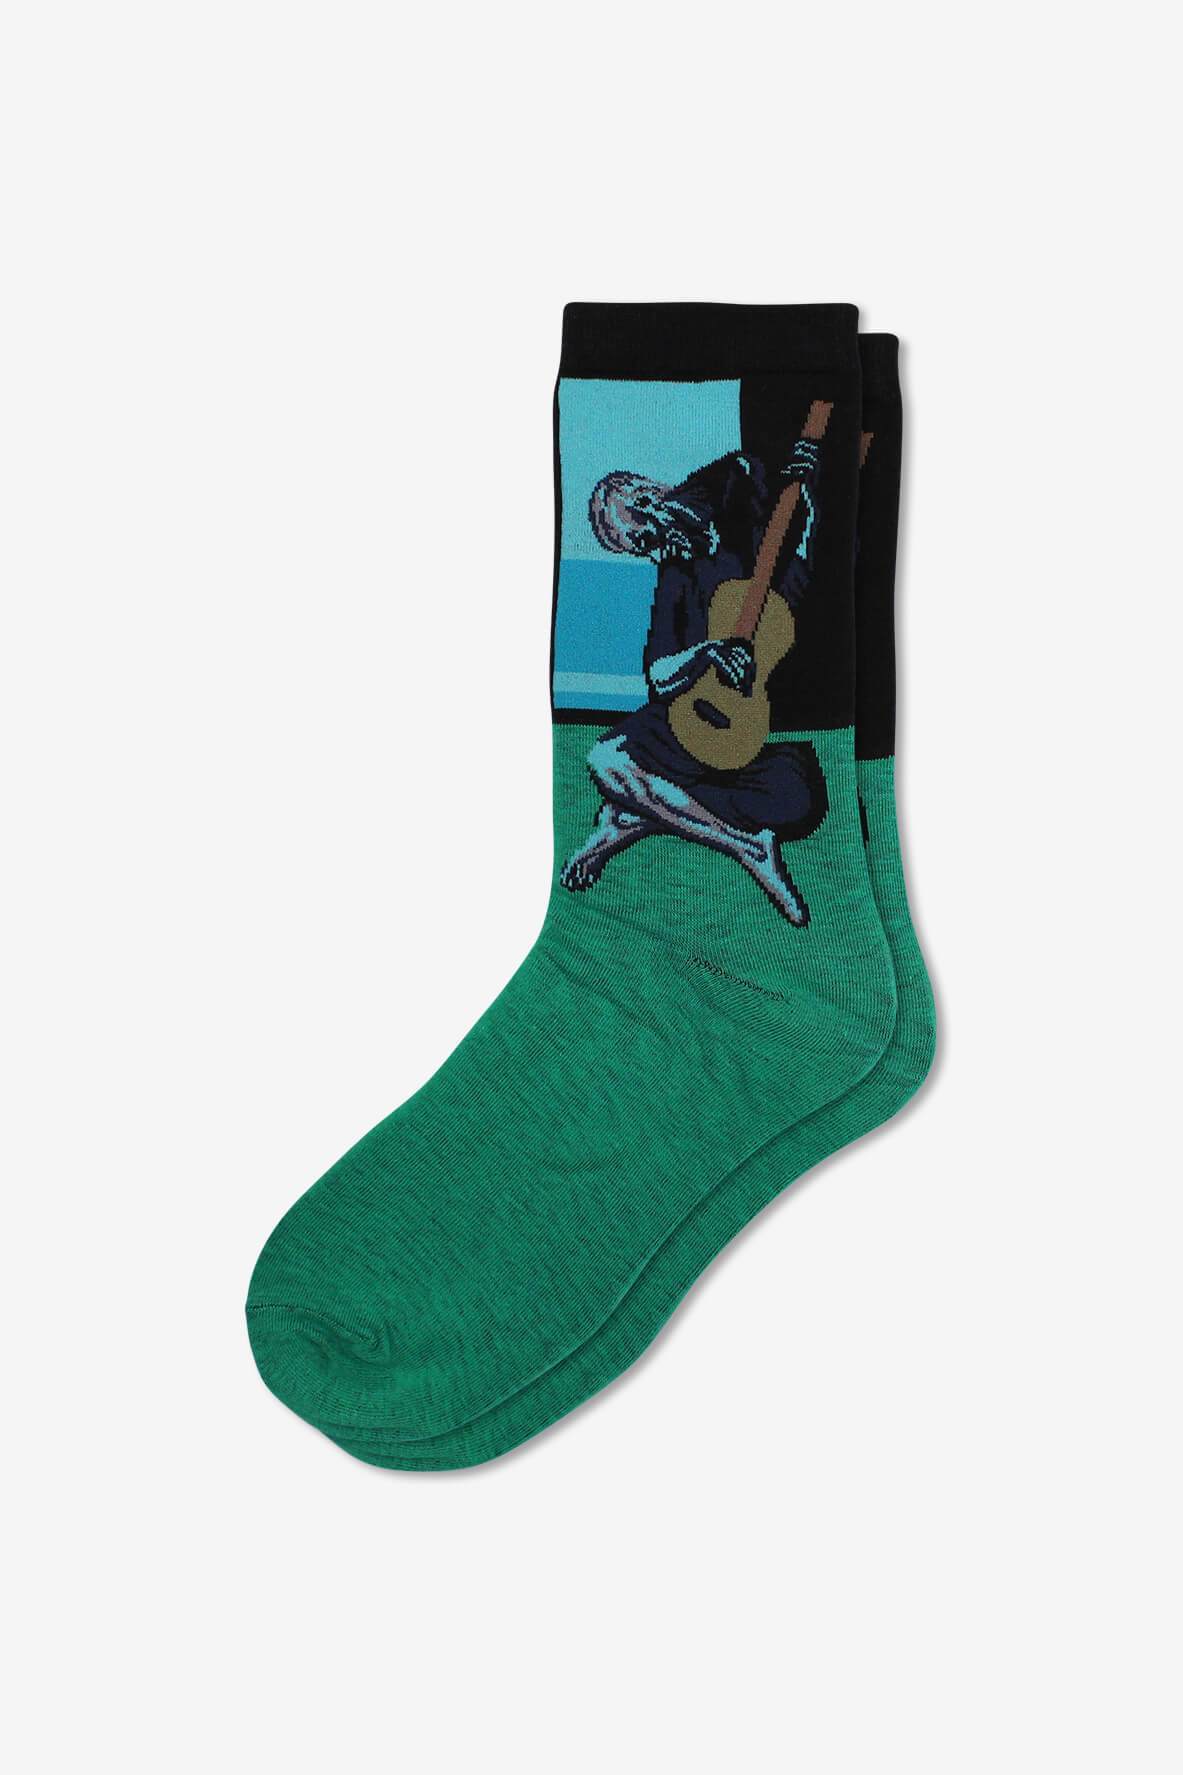 Socks IMG_5296, socks, GoTie